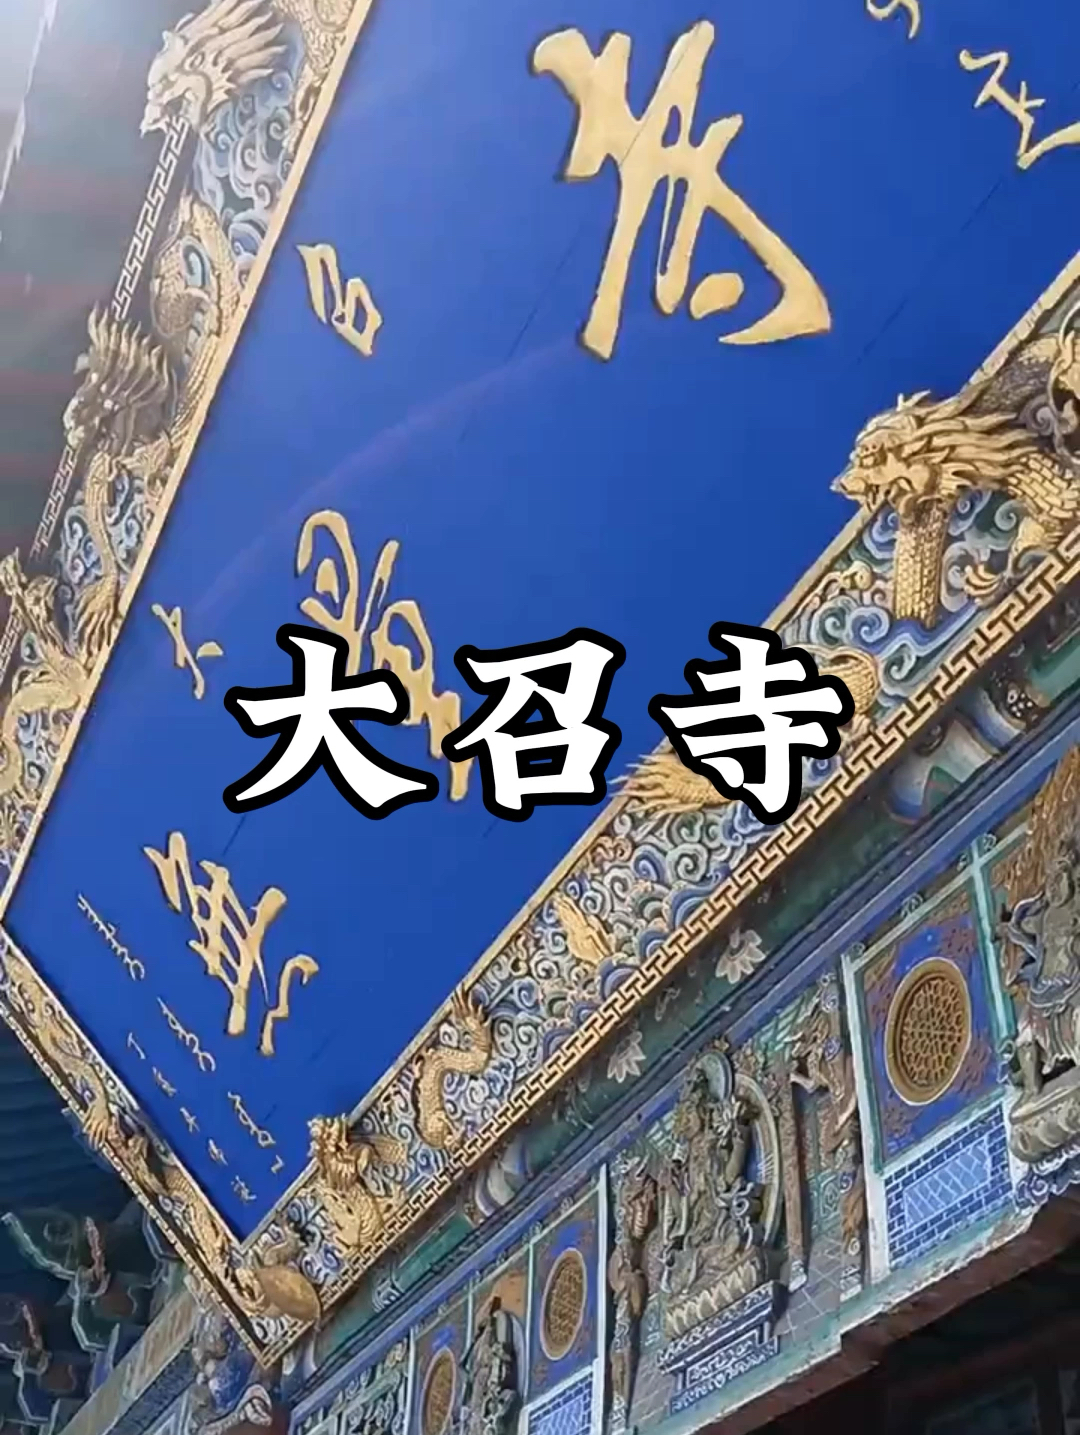 内蒙古呼和浩特市大召寺——中国著名的藏传佛教寺庙